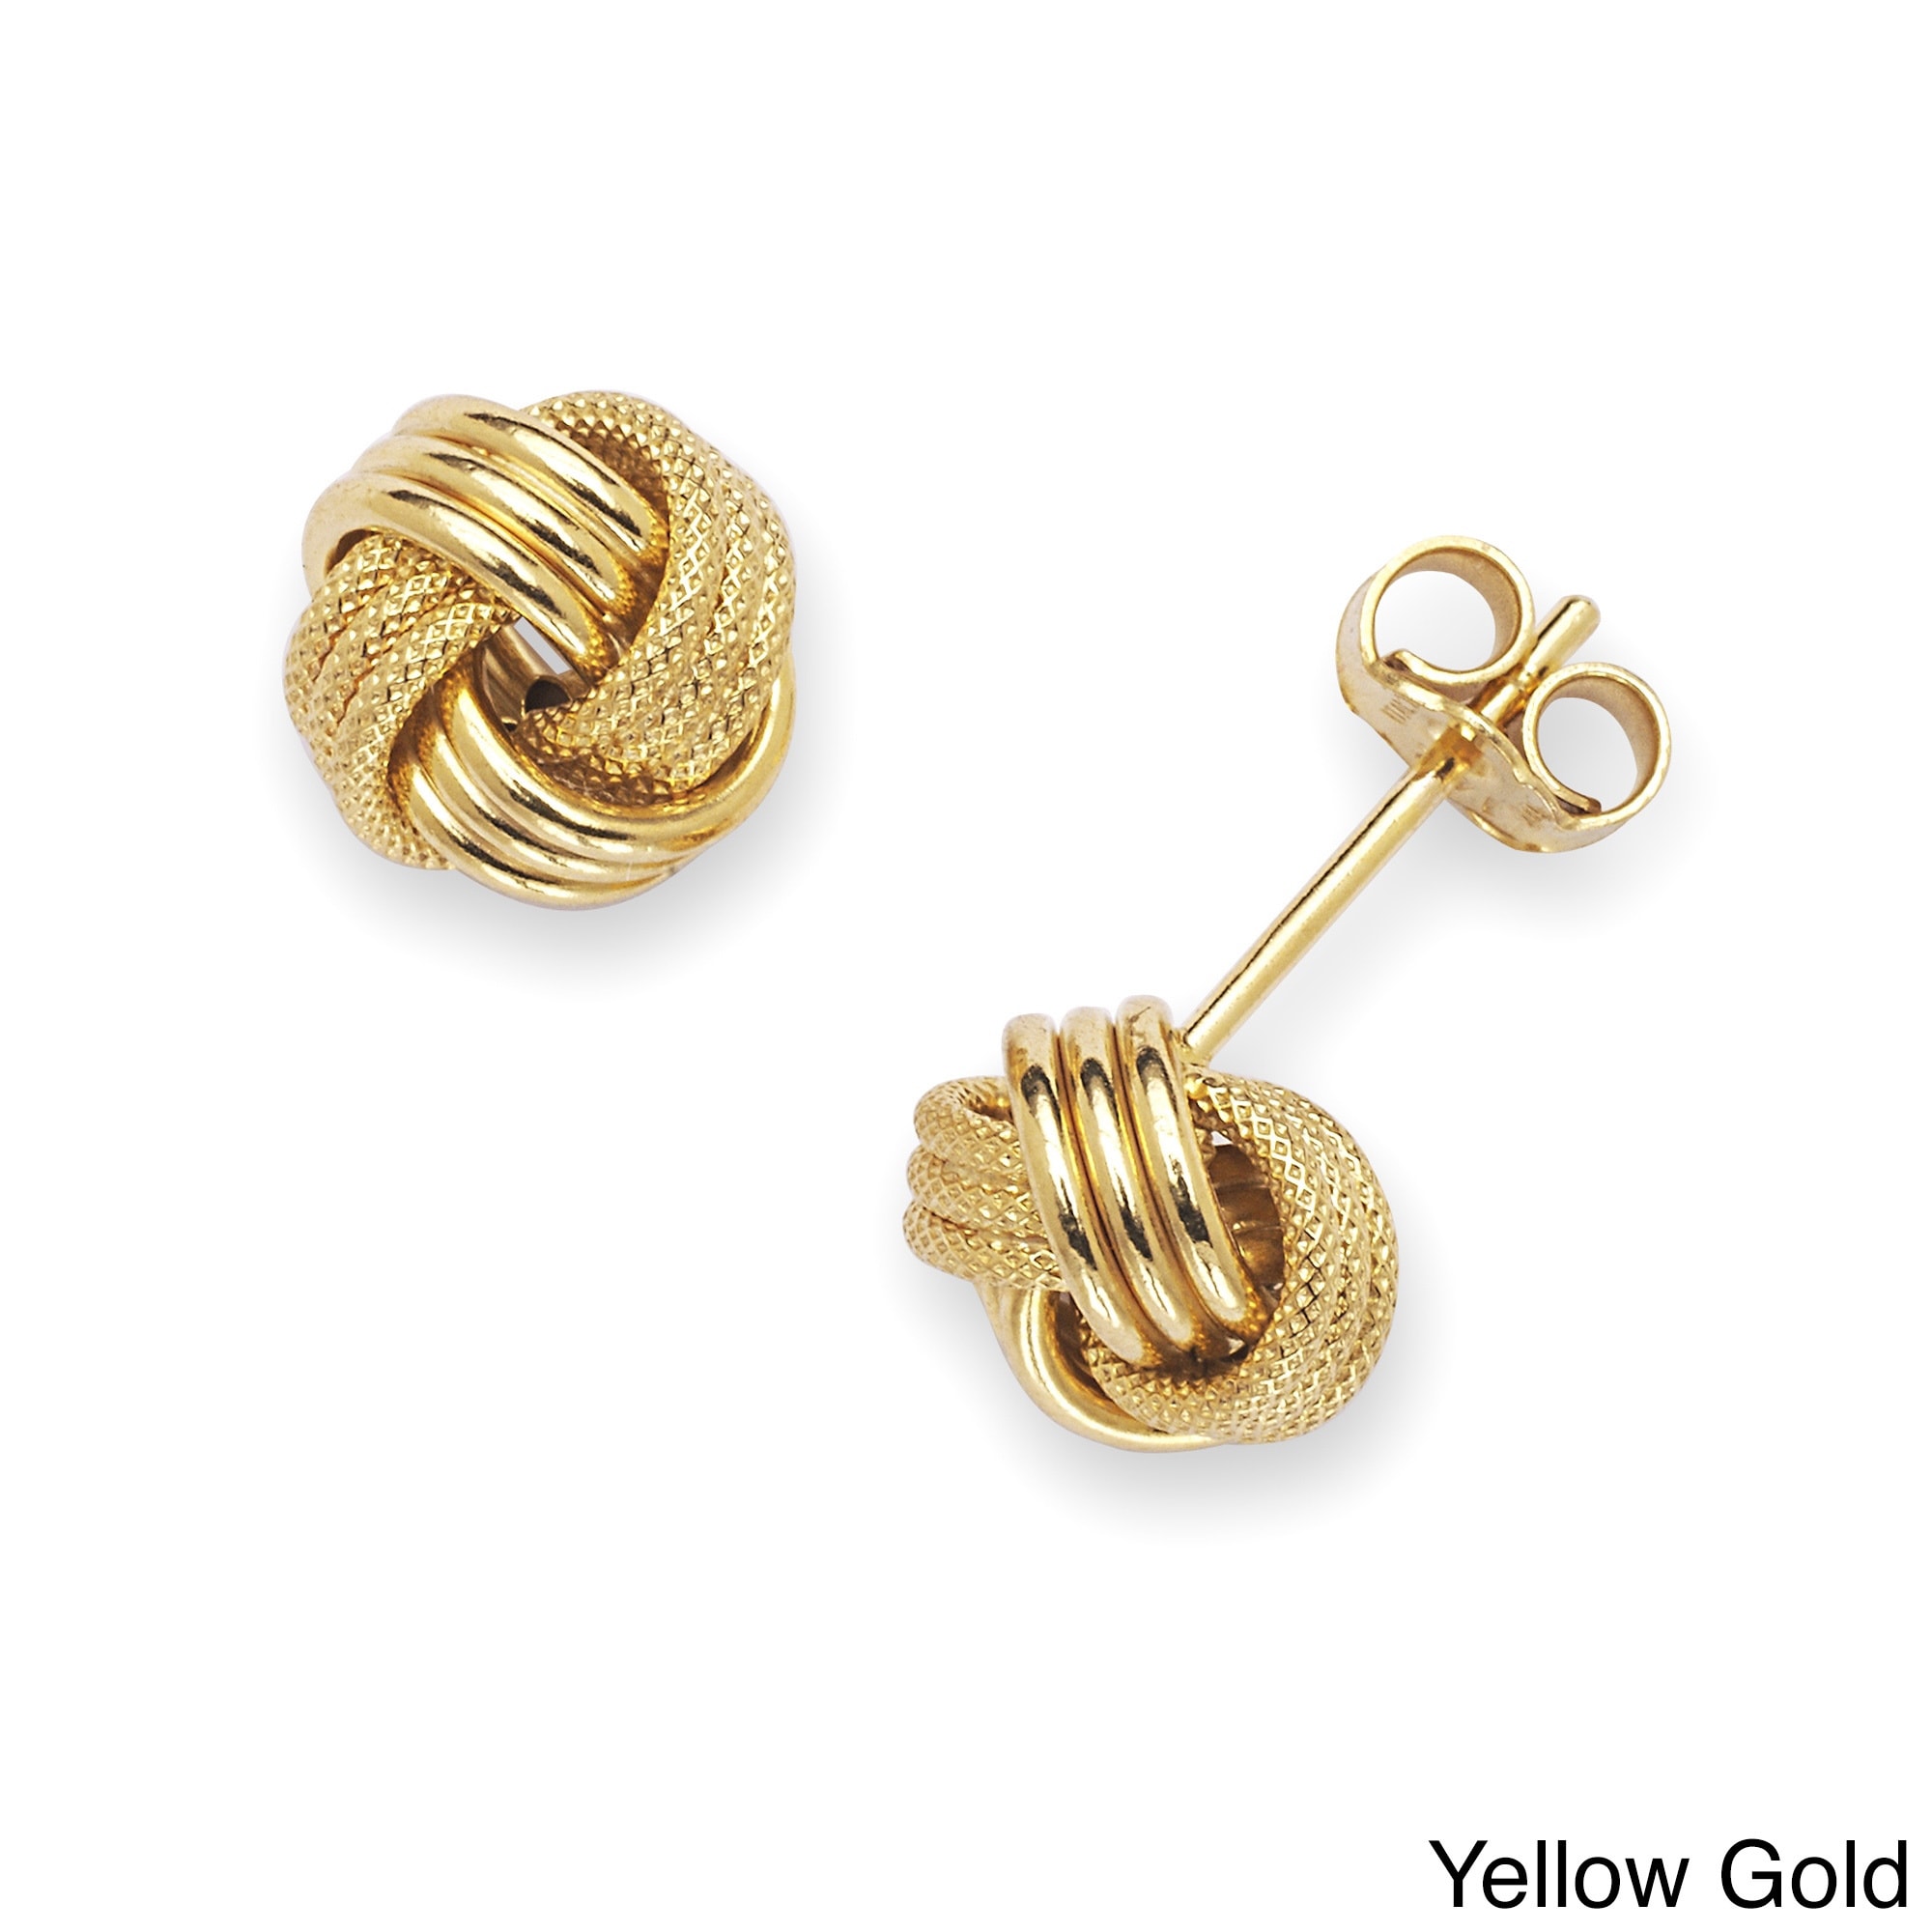 925 Sterling Silver Bezel Polished Post Earrings Garnet Circle Stud Earrings Measures 7x7mm Wide Jewelry Gifts for Women 